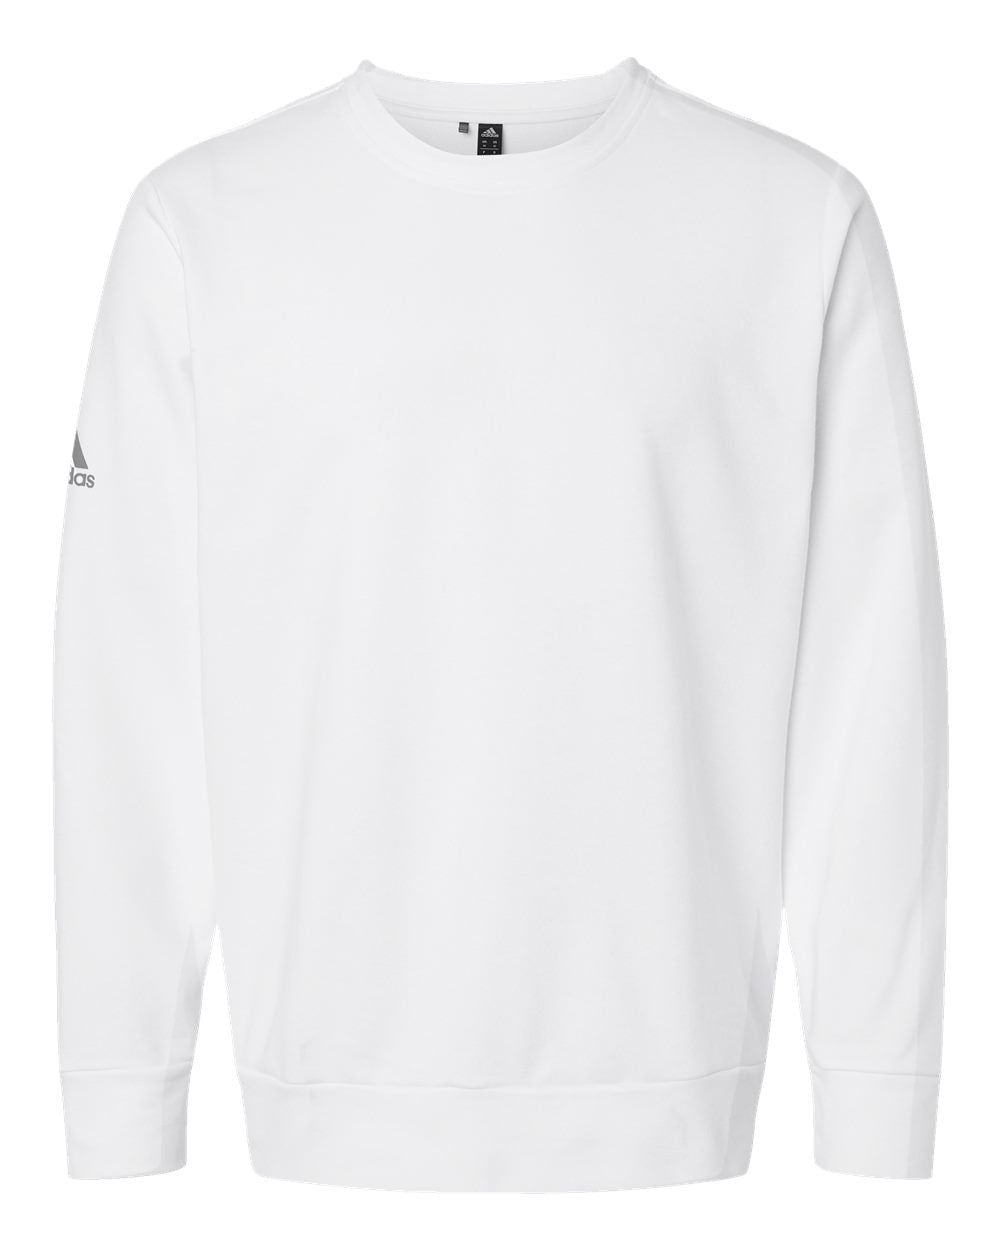 Adidas A434 Fleece Crewneck Sweatshirt #color_White